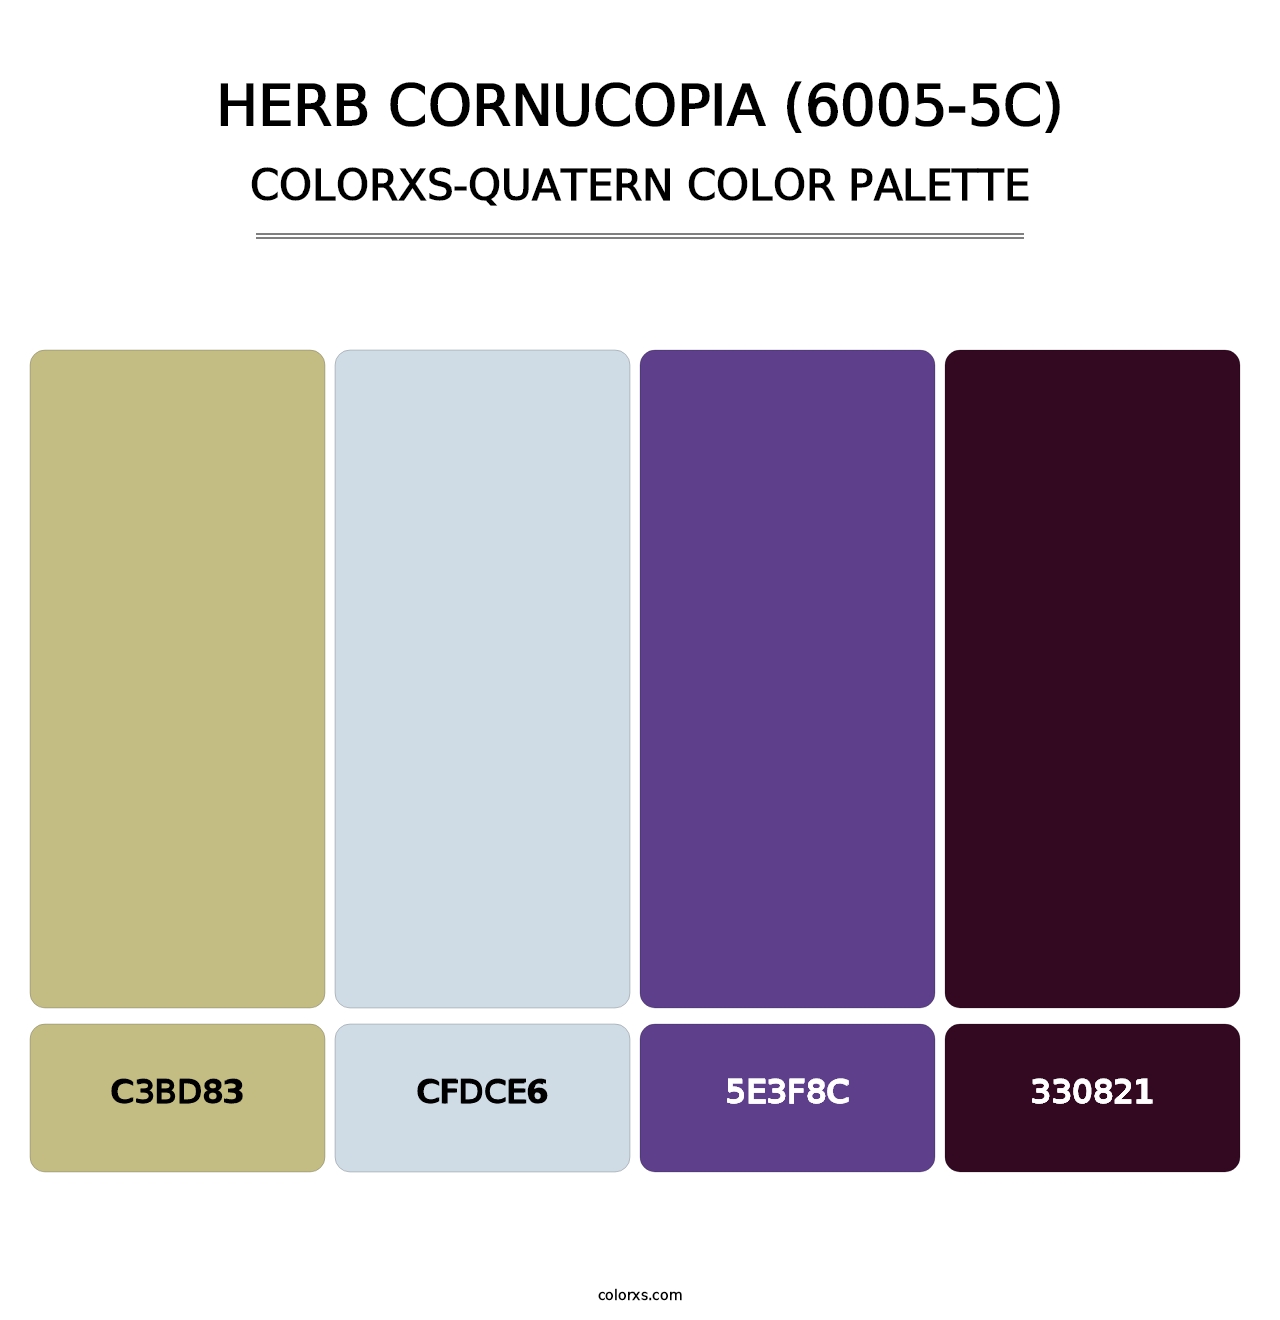 Herb Cornucopia (6005-5C) - Colorxs Quatern Palette